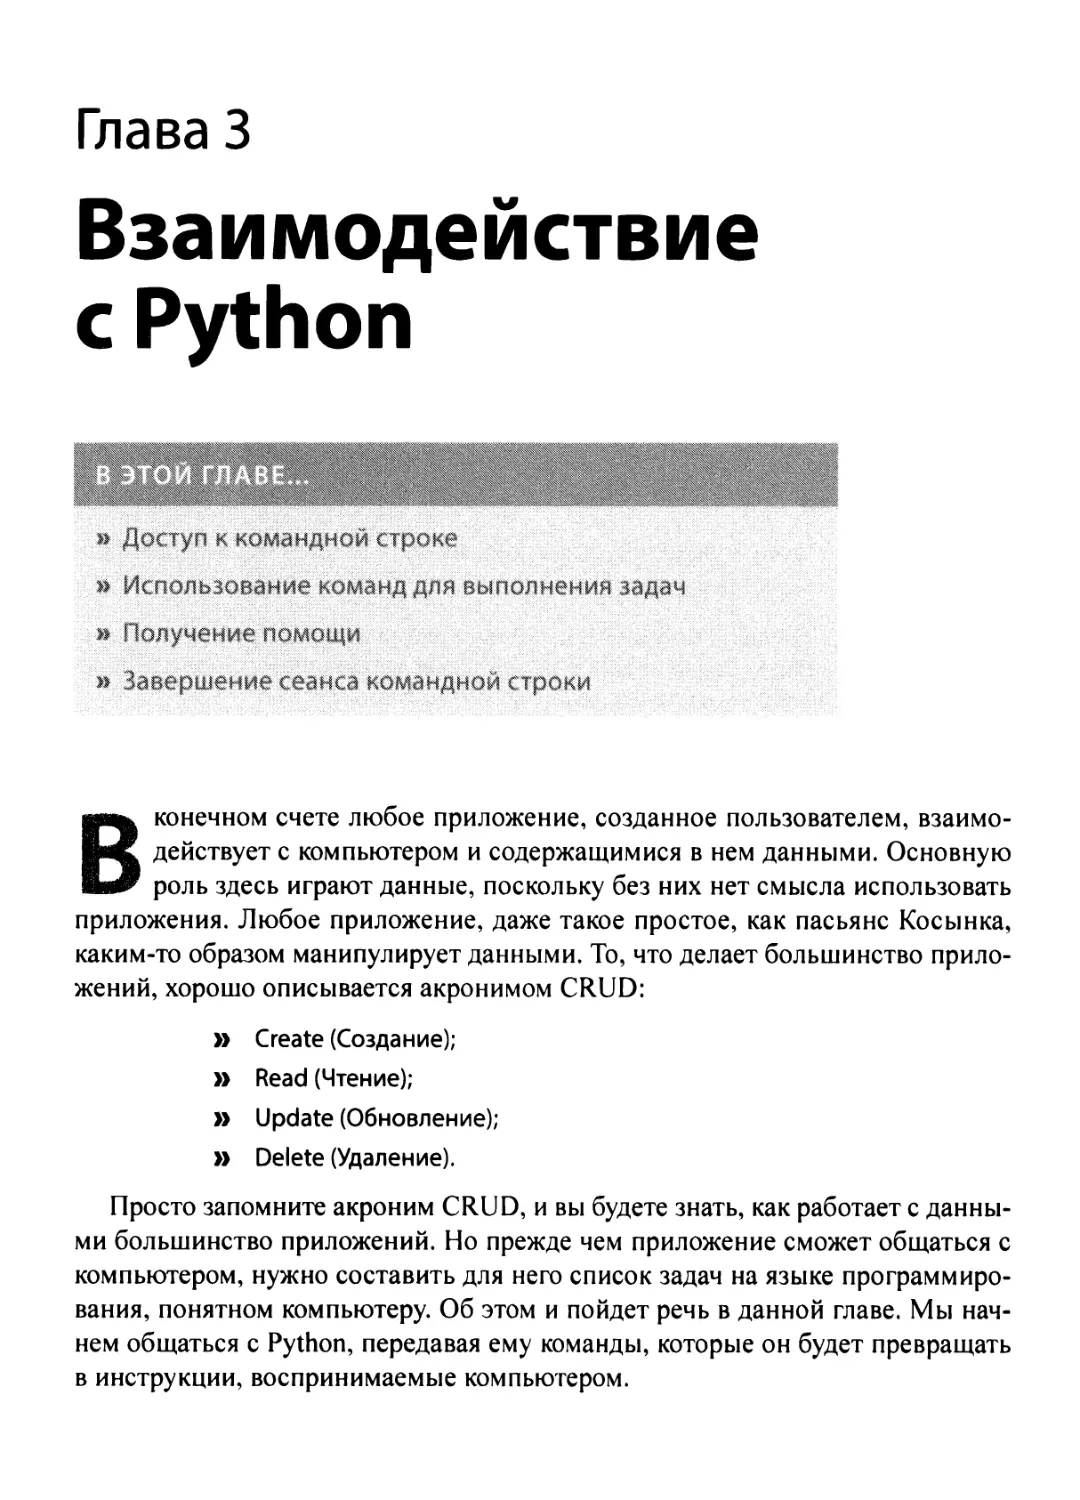 3. Взаимодействие с Python